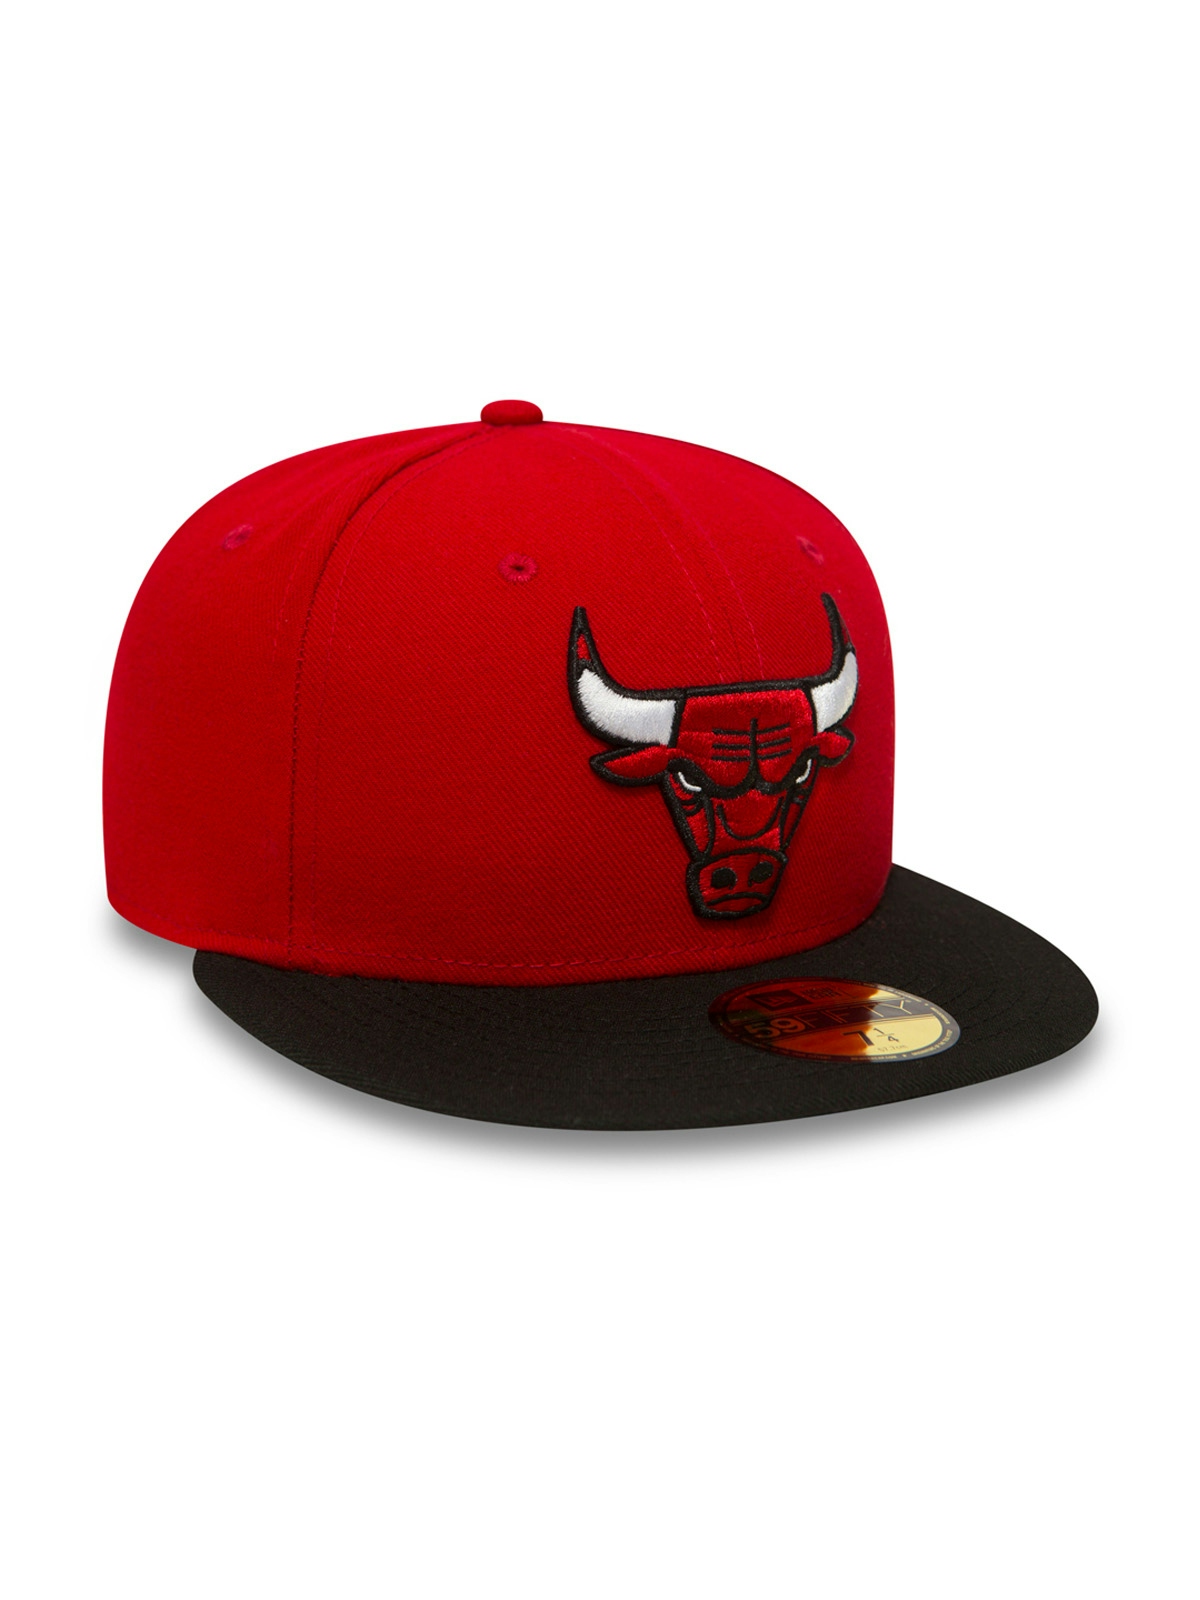 New Era Nba Basic Chicago Bulls Caps Red 1